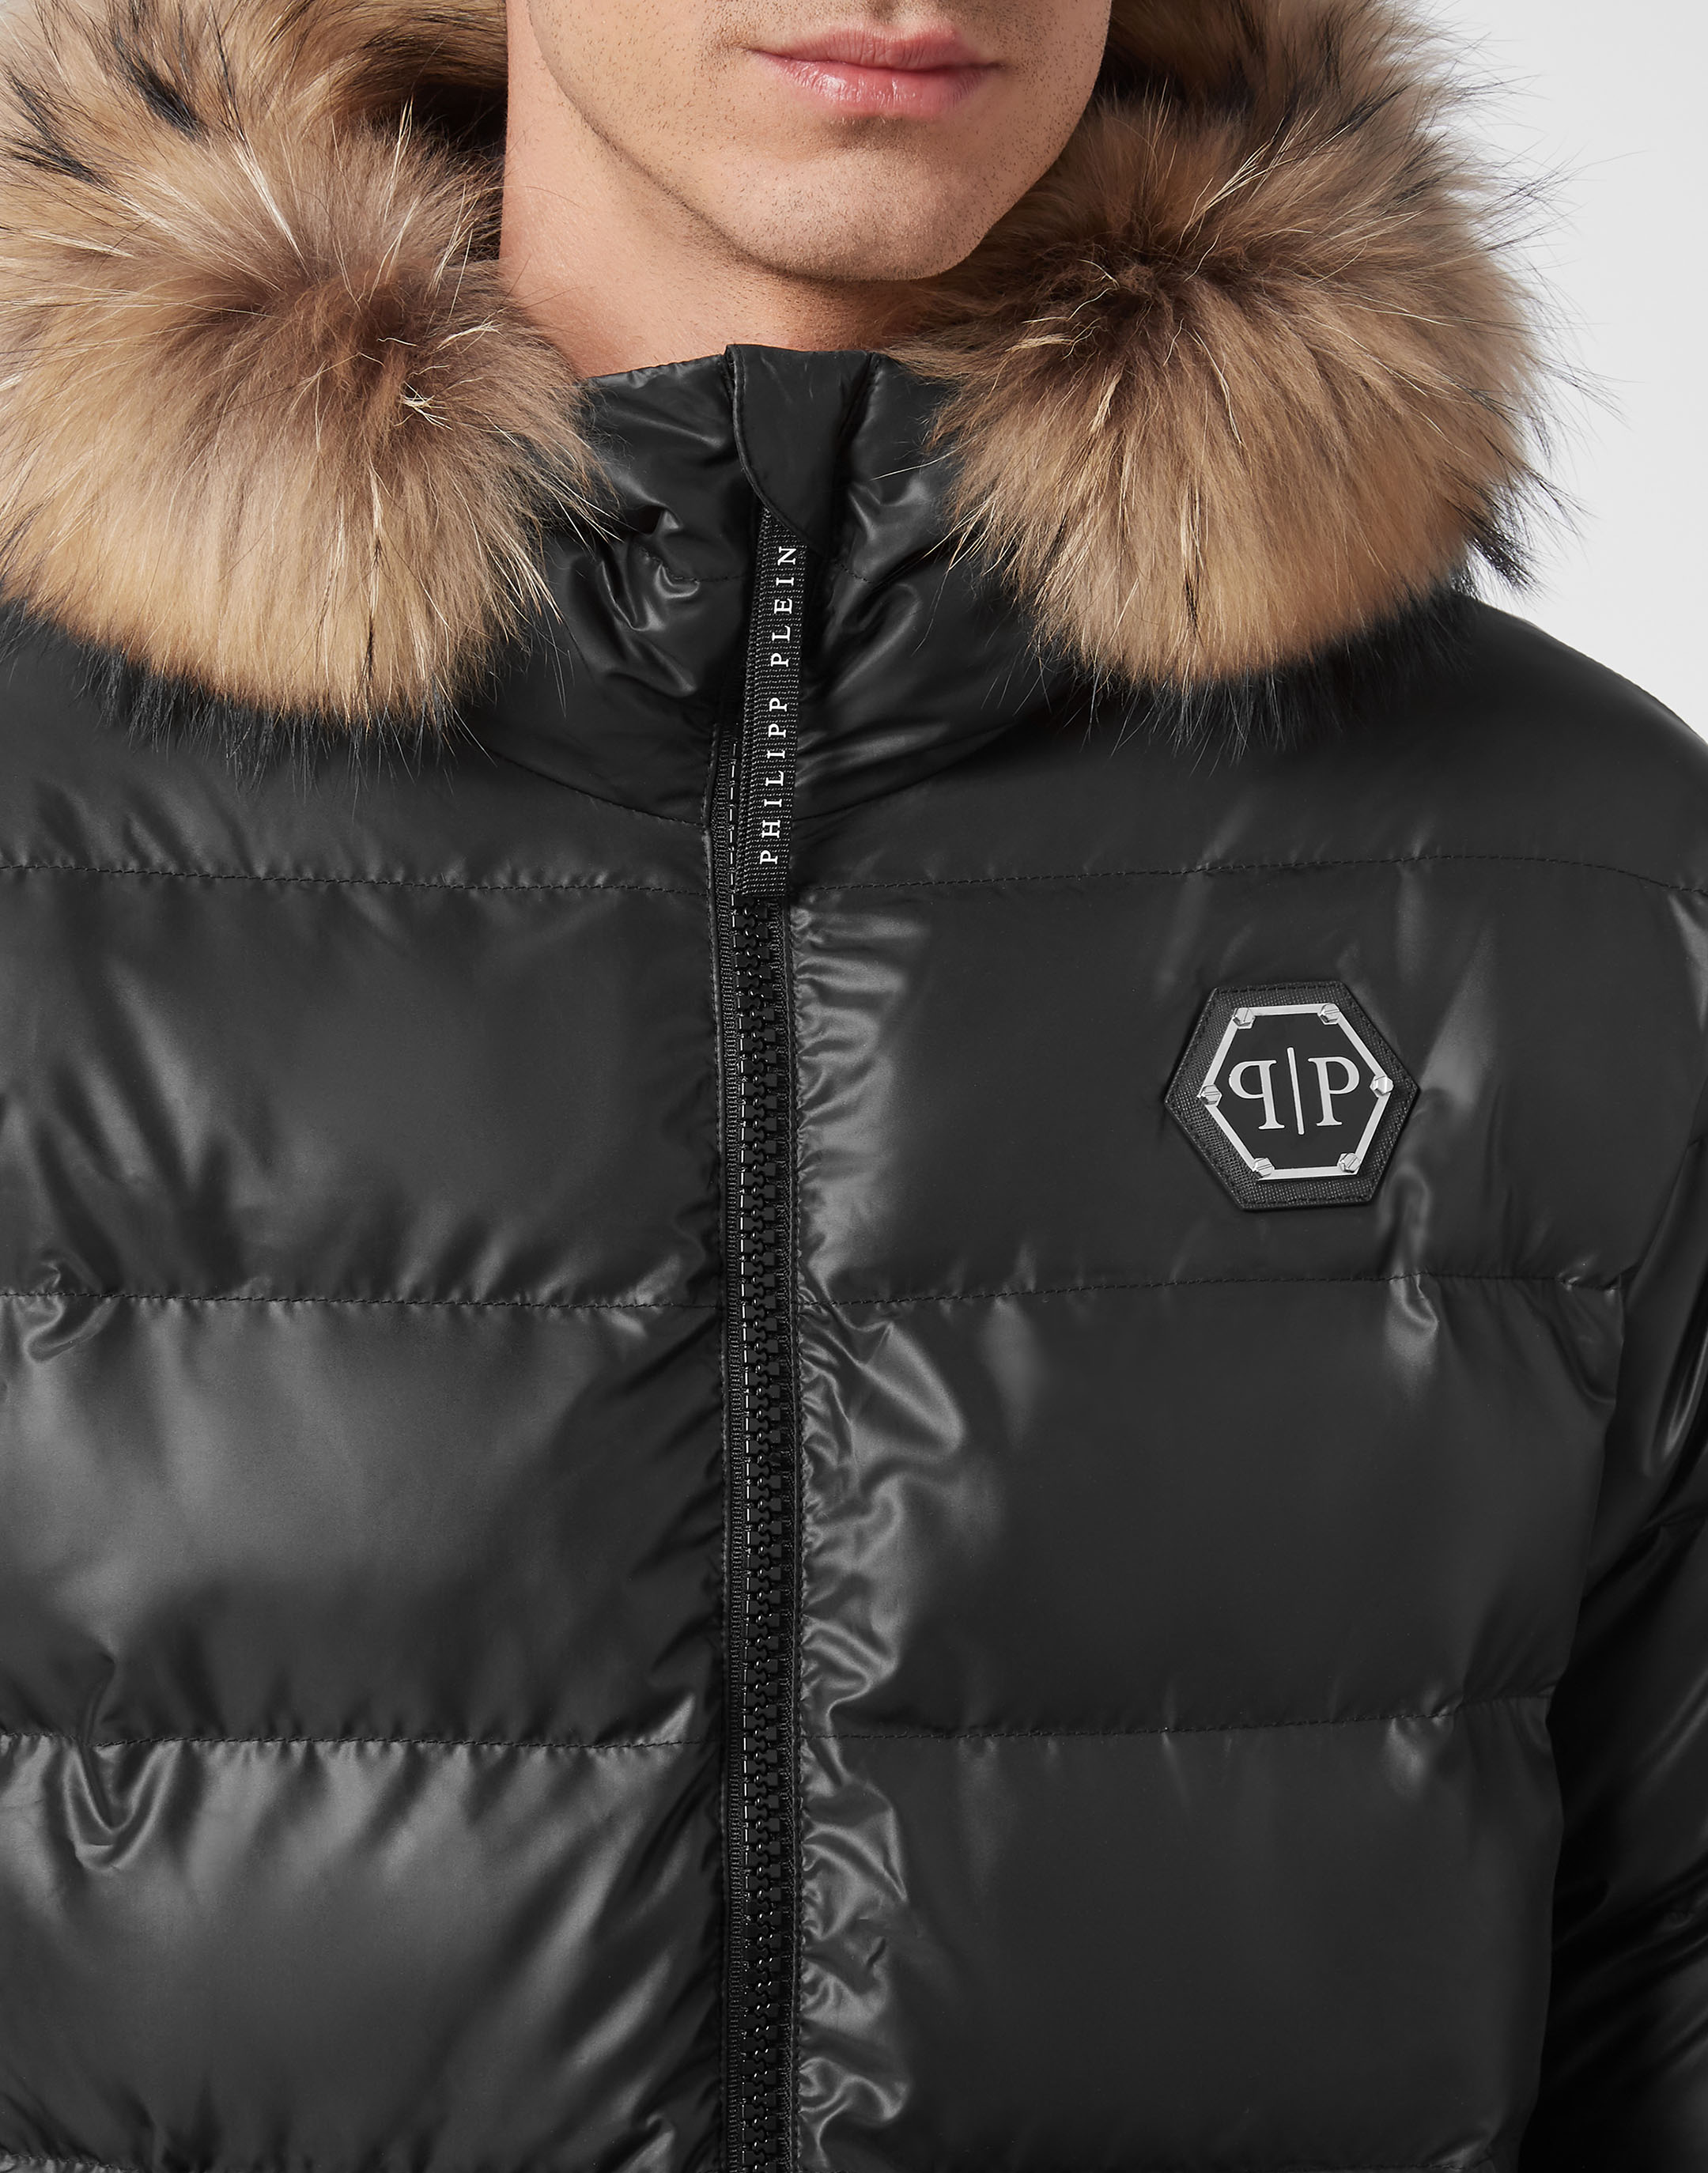 Nylon Jacket With Fur | Philipp Plein Outlet